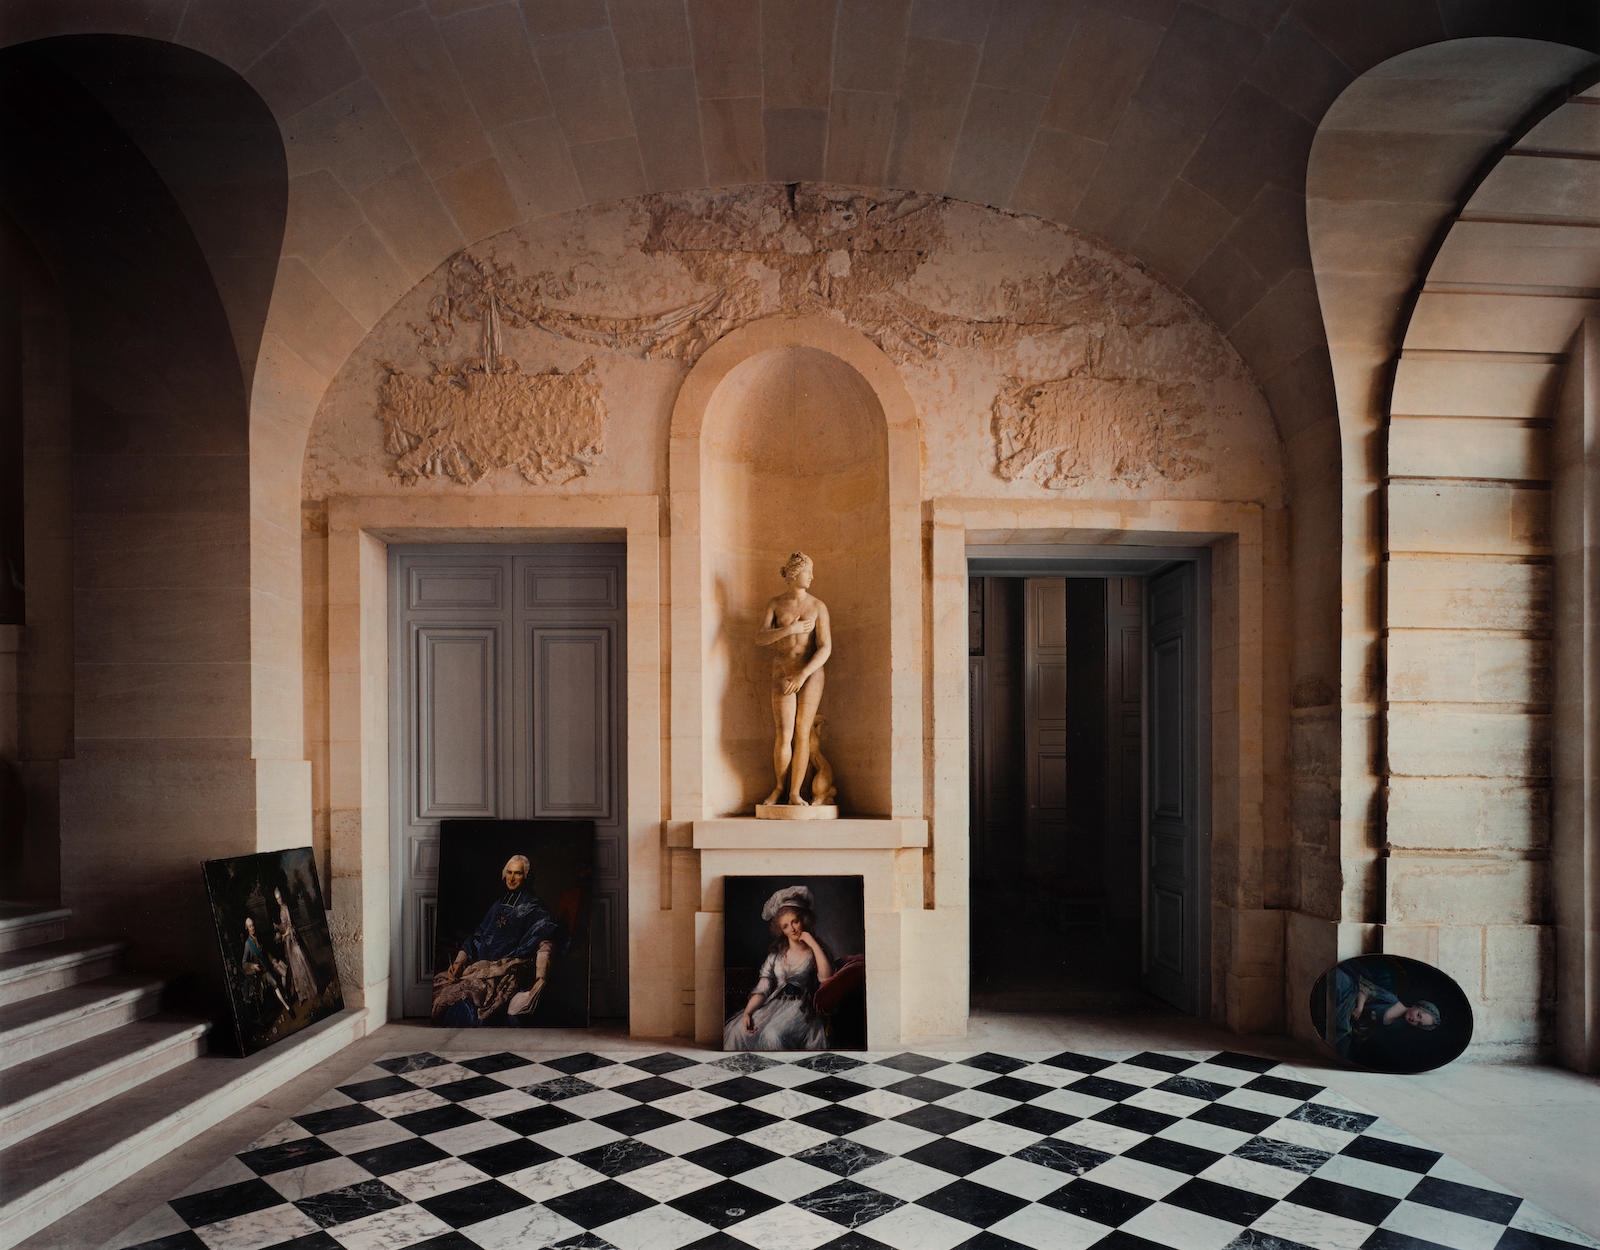 Galerie Basse, Château de Versailles by Robert Polidori, 1985